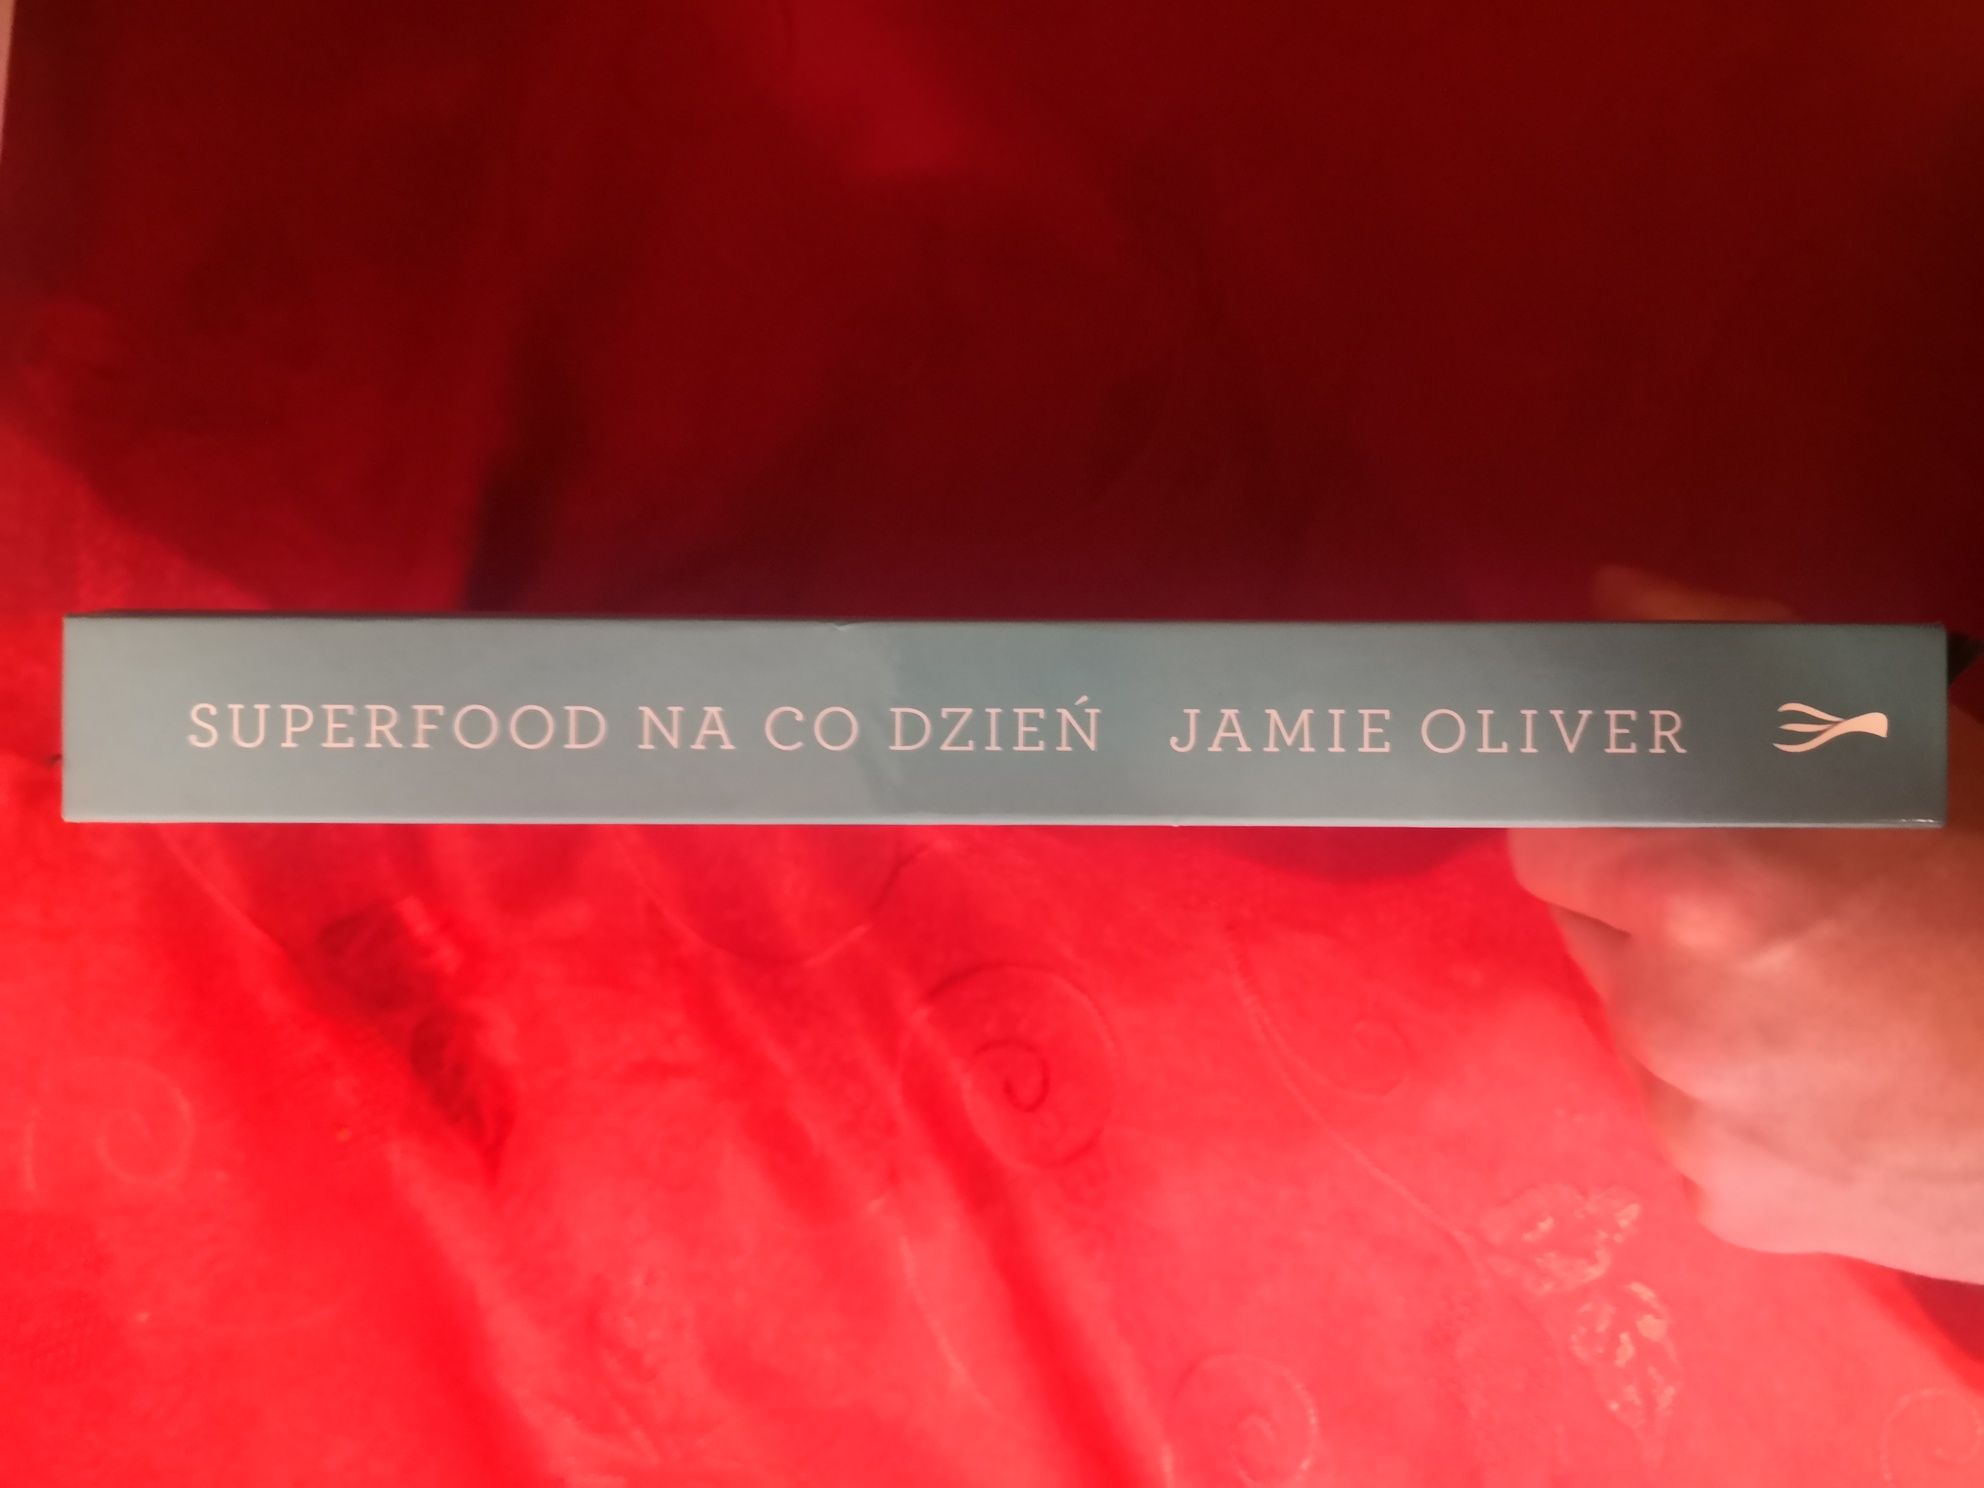 Jamie Oliver Superfood